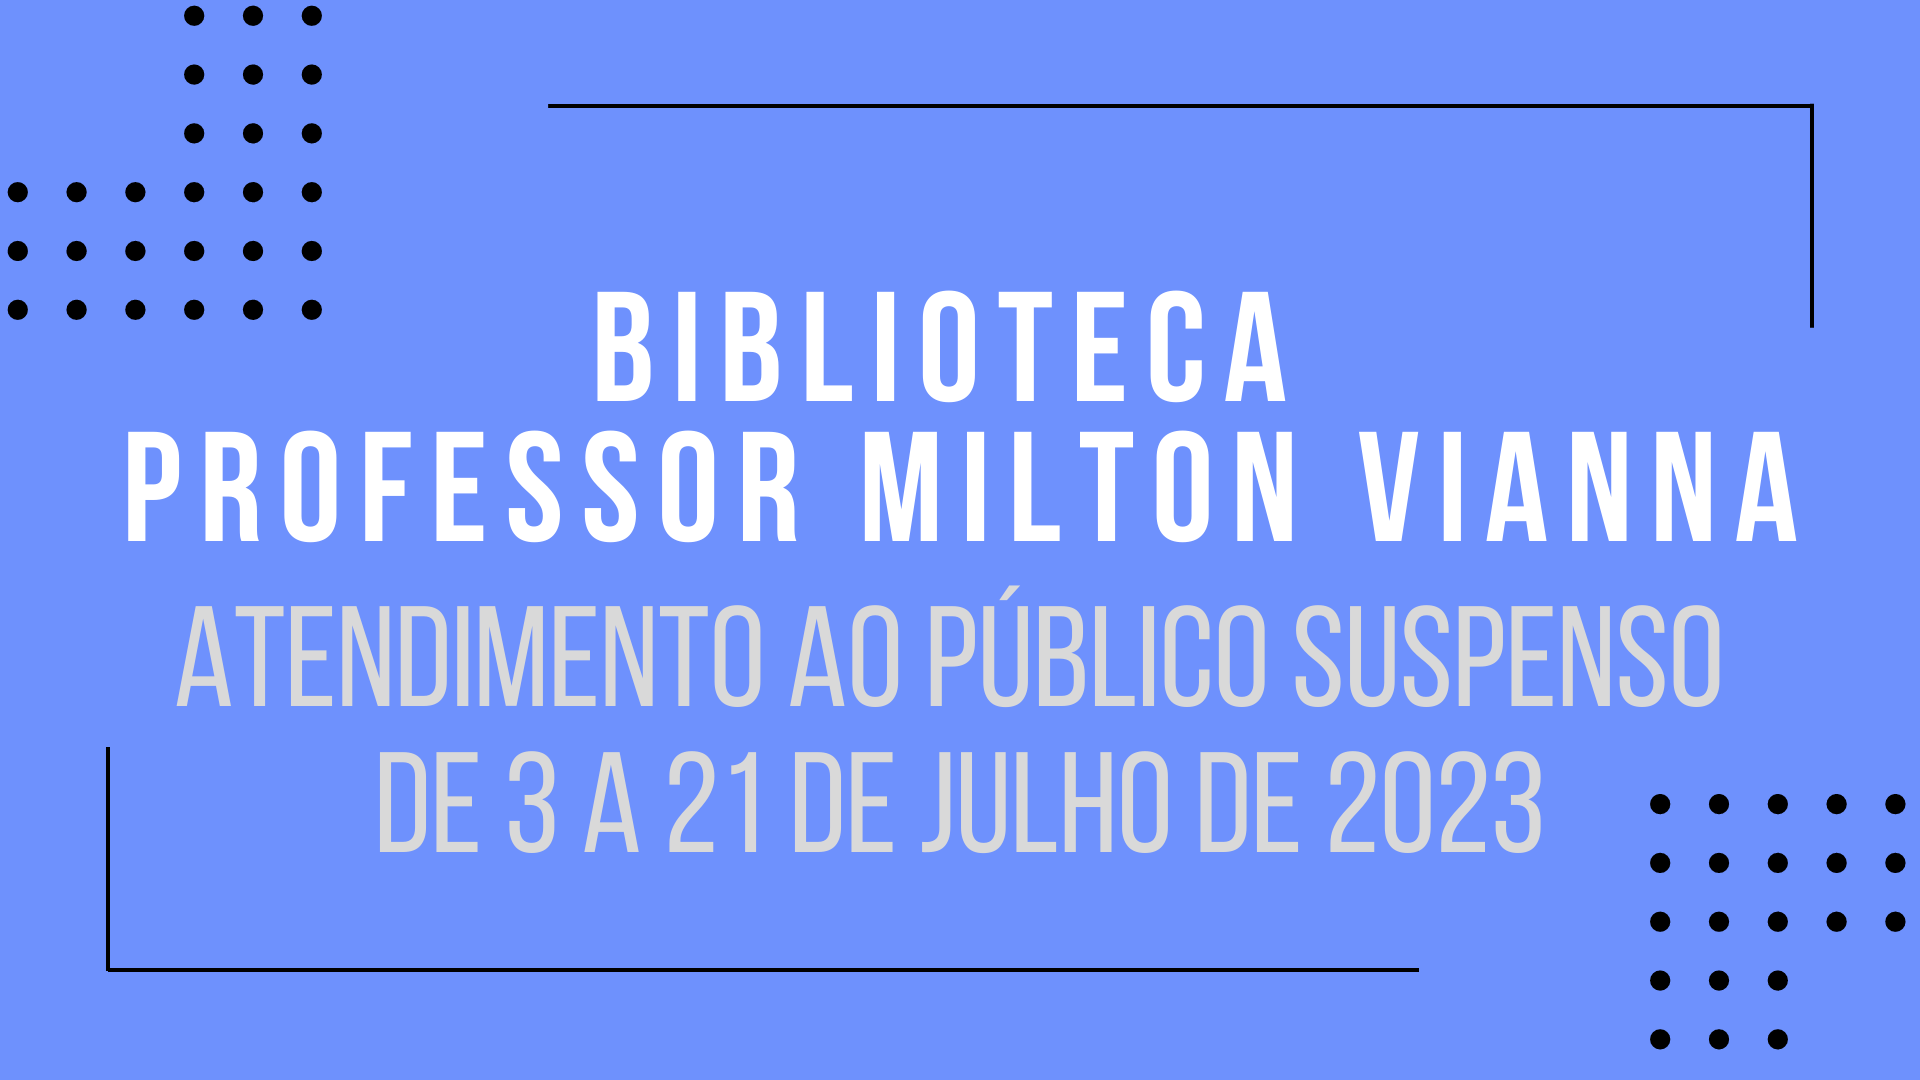 Imagem: "Biblioteca Professor Milton Vianna: atendimento ao público suspenso de 3 a 21 de julho de 2023" (arquivo JPG)